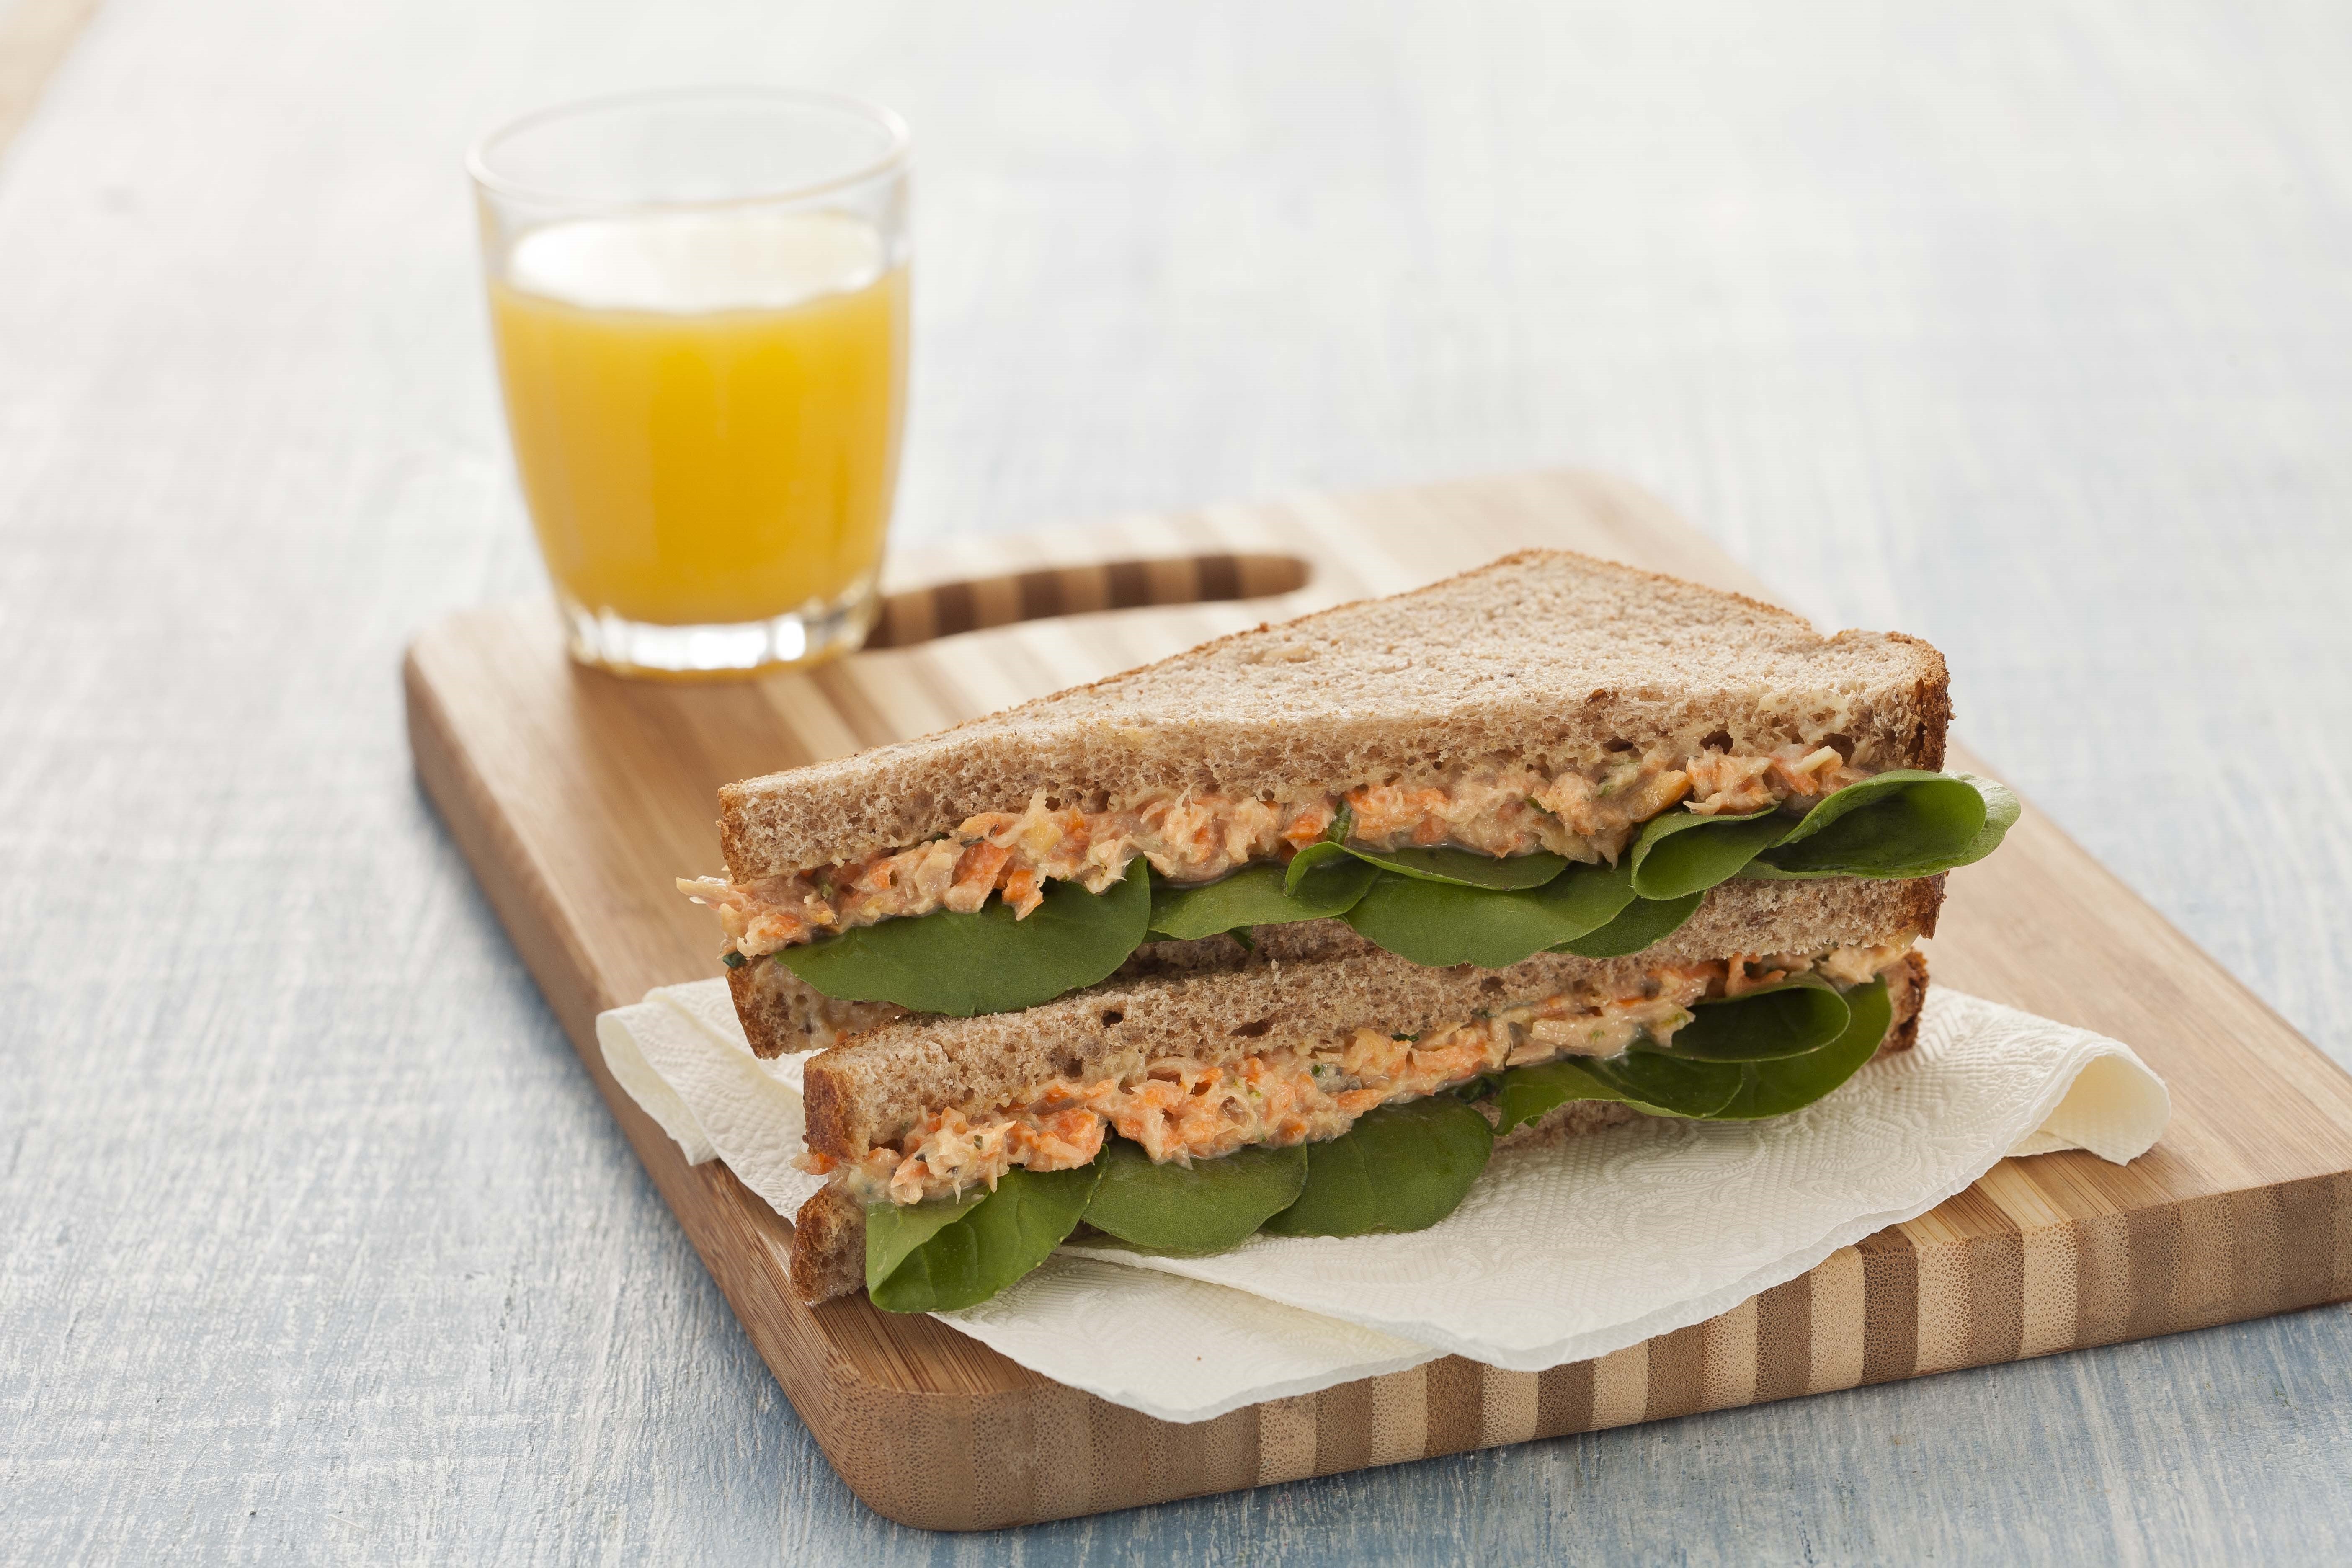 Sandwich0-Atún-Hierbas-Molico-recetas-nestle